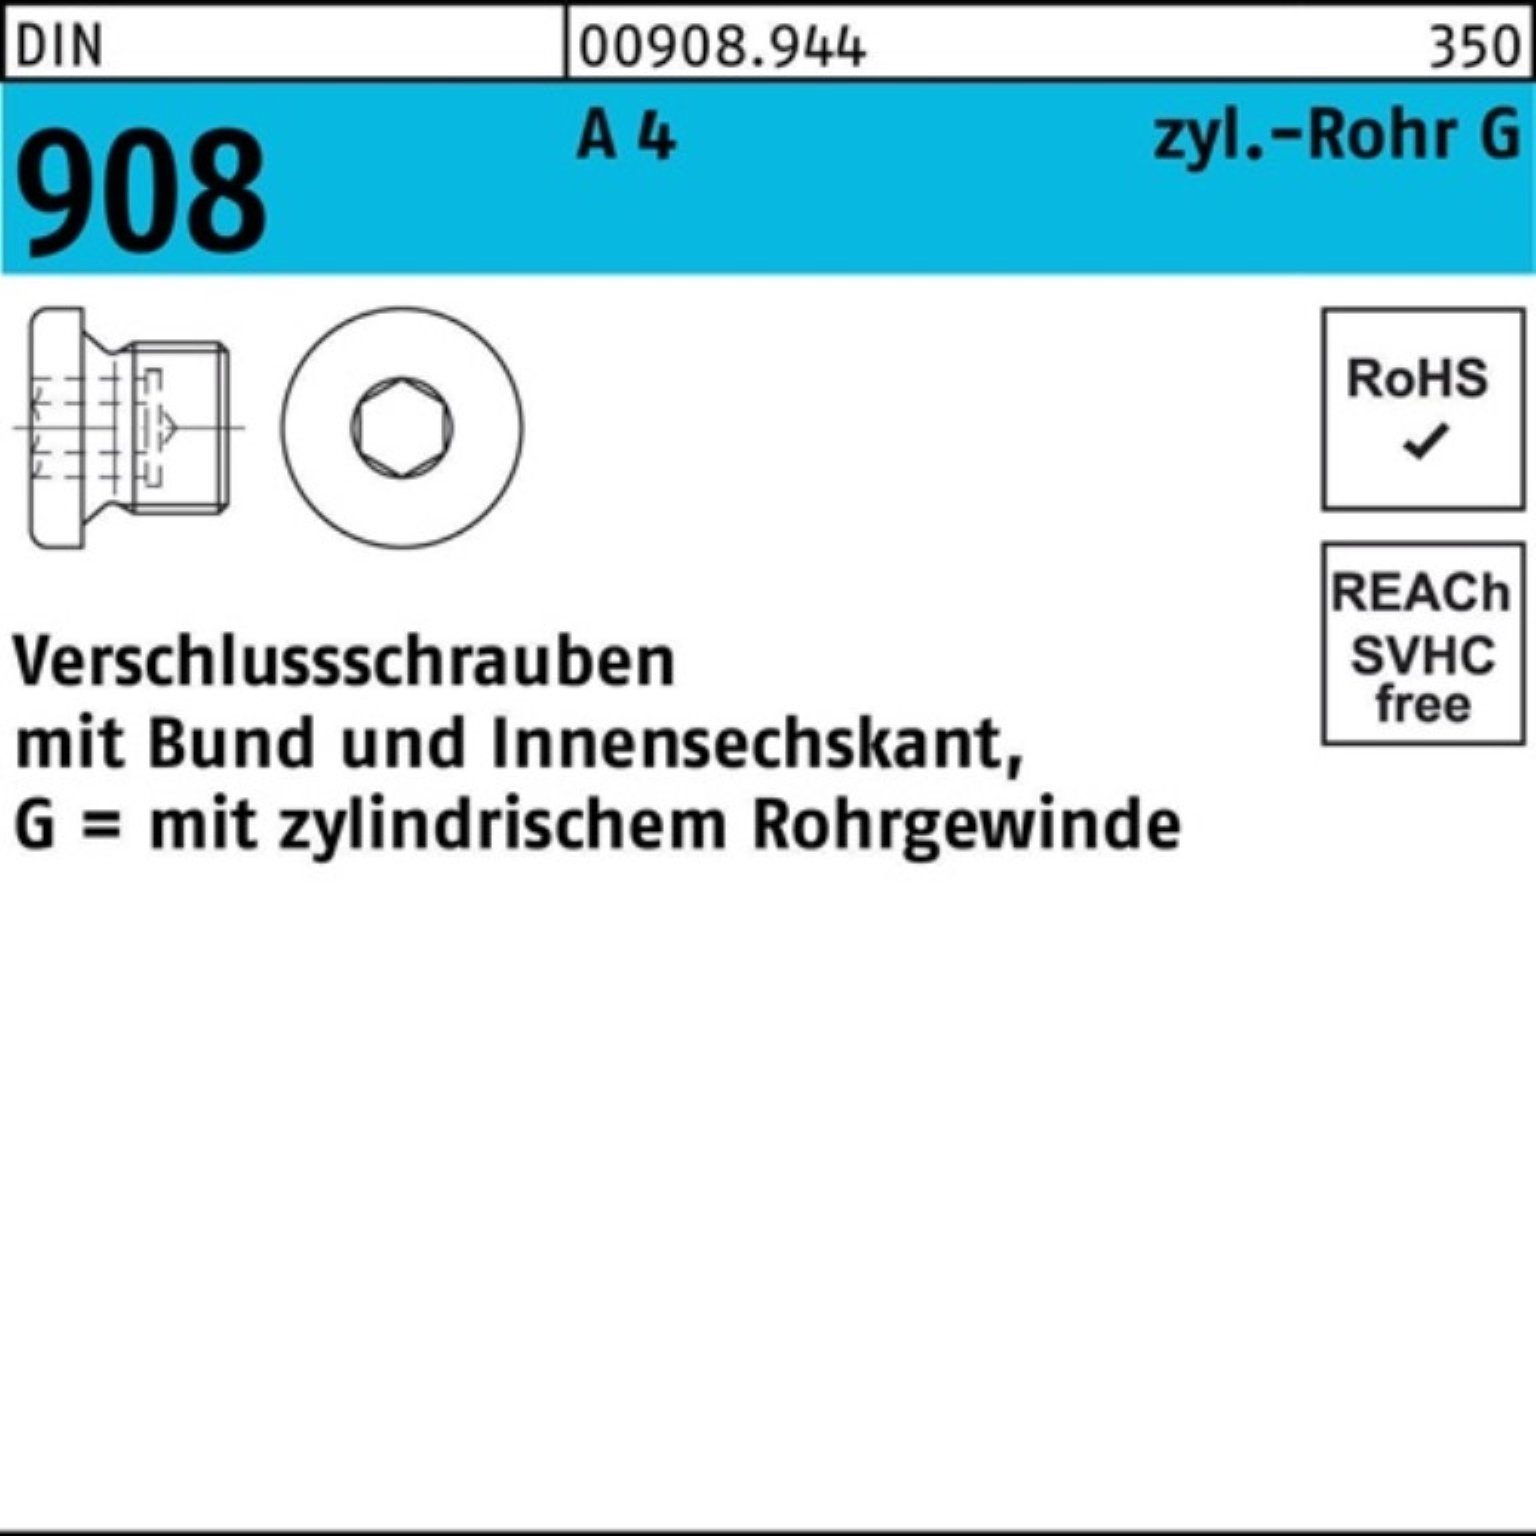 Reyher Schraube 100er Pack Verschlußschraube DIN 908 Bund/Innen-6kt G 3/8 A A 4 1 St